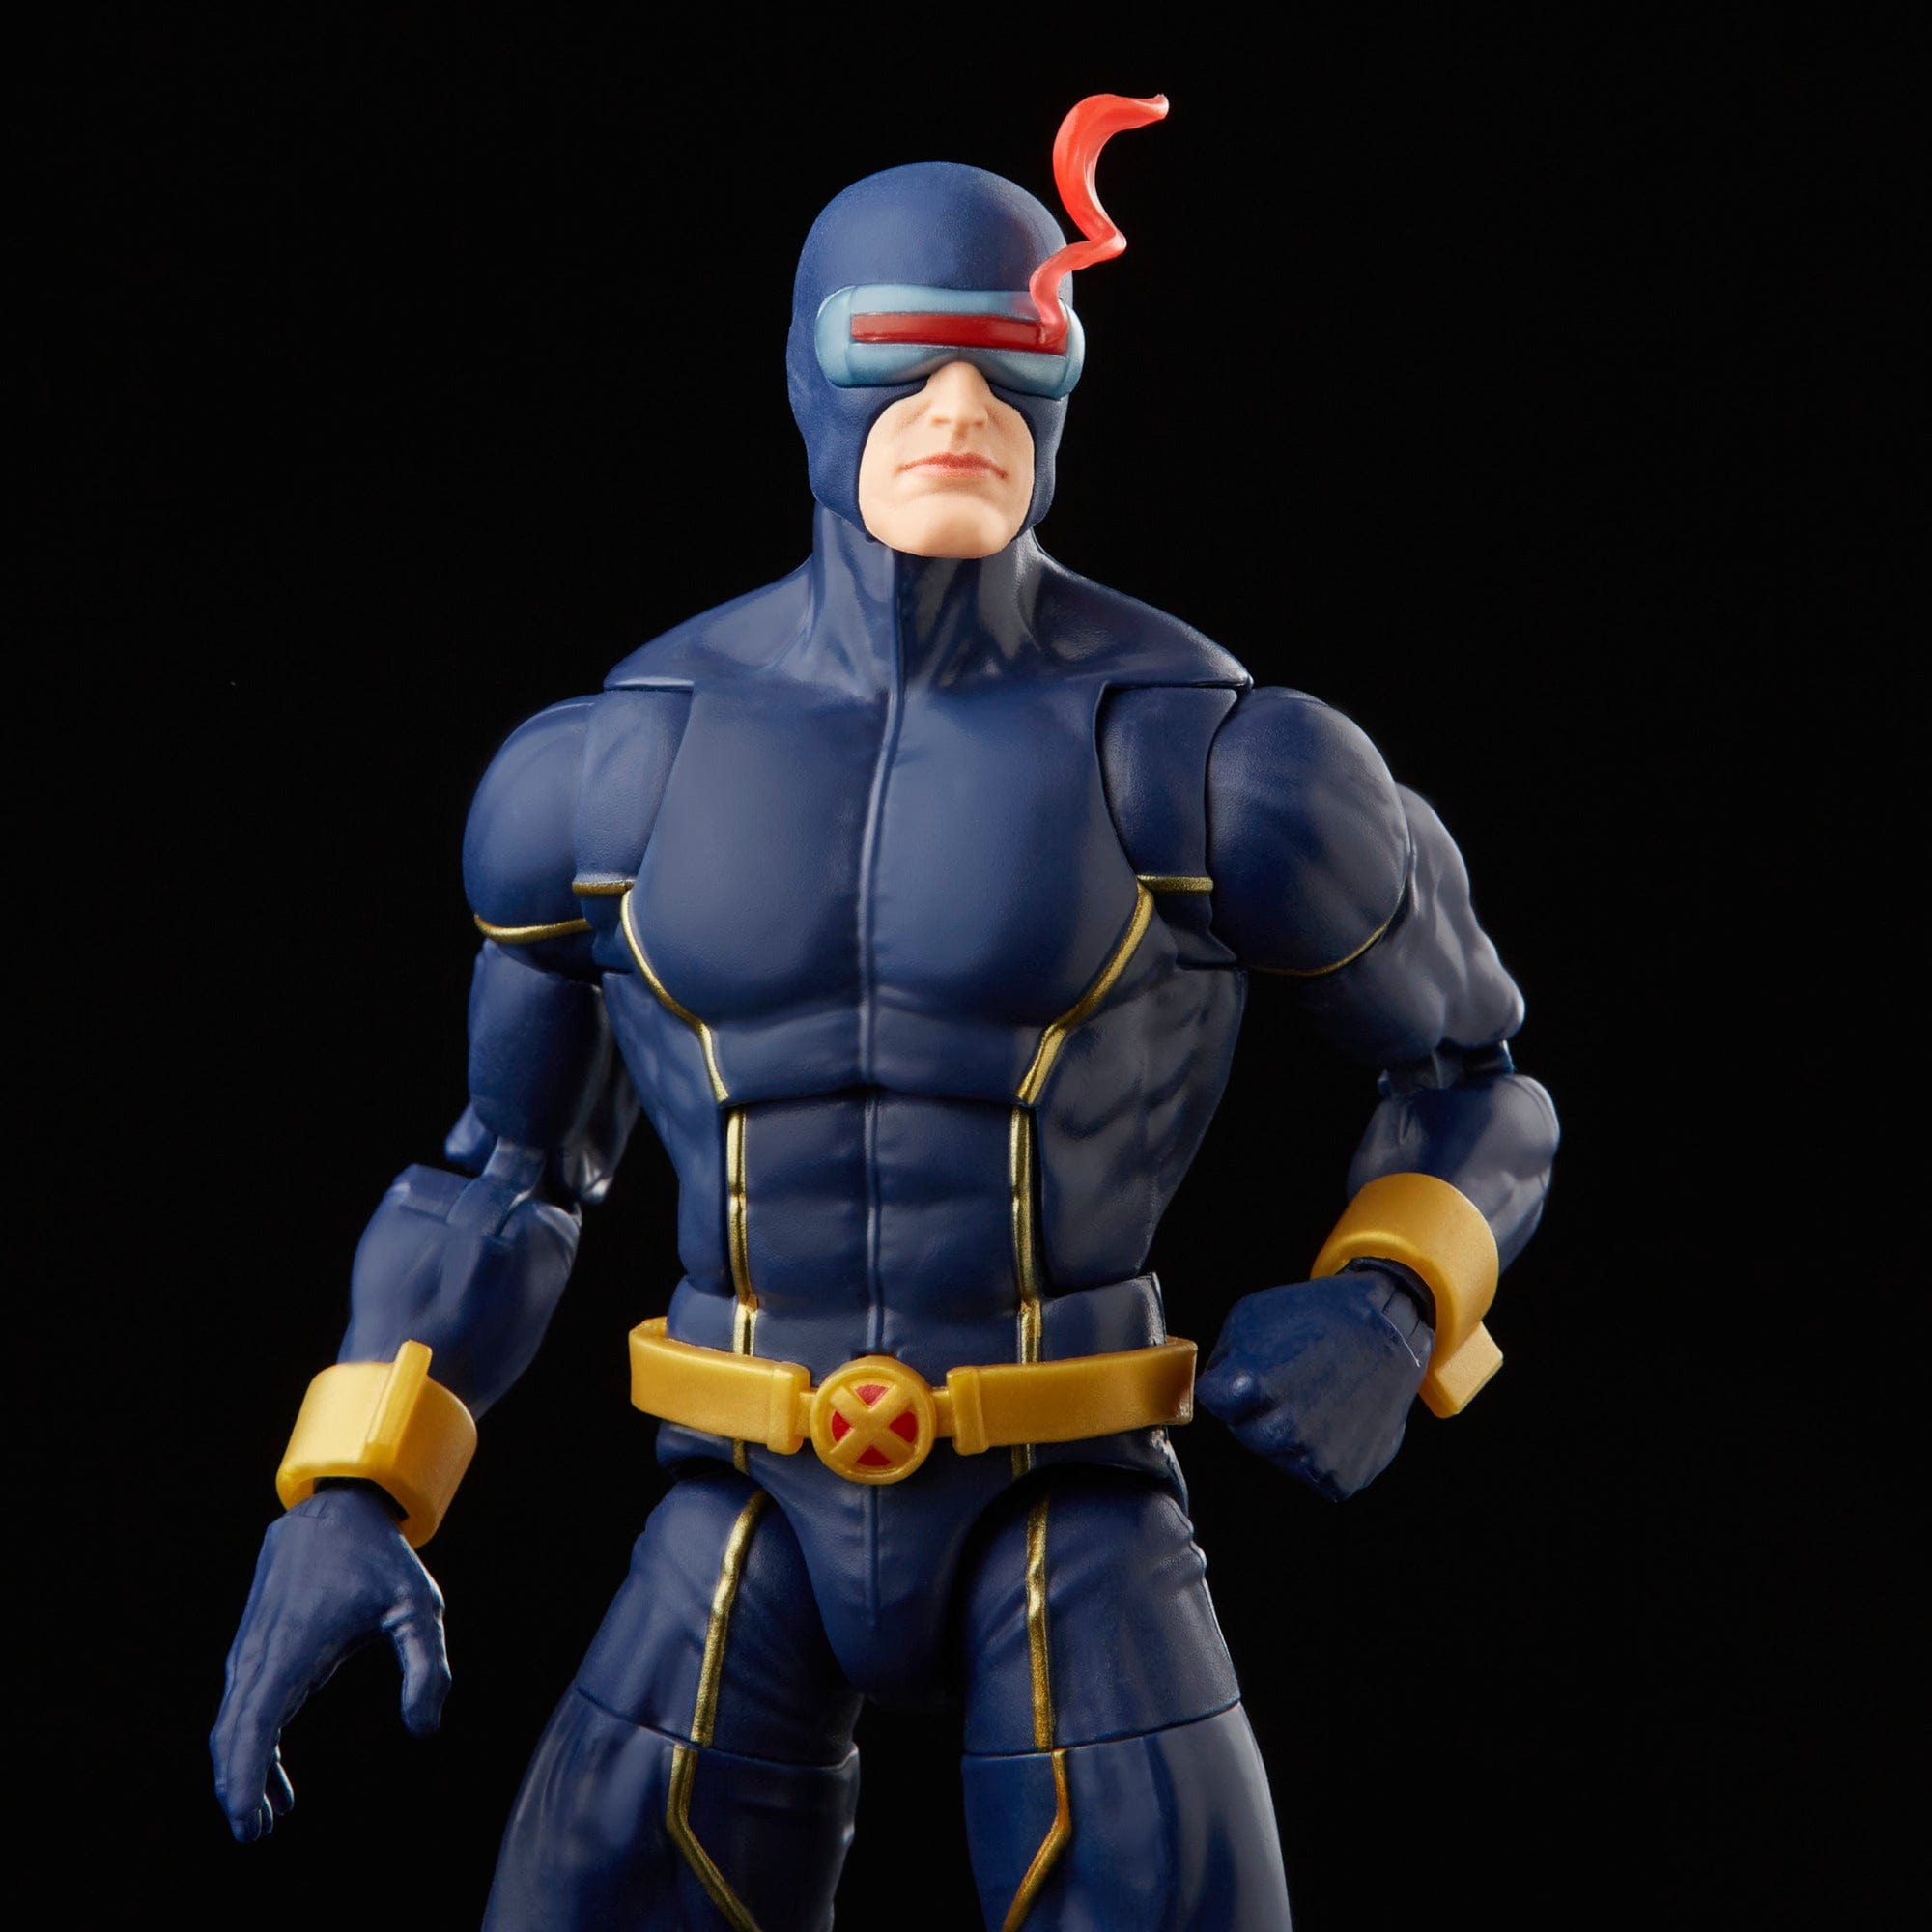 Hasbro Marvel Legends Series Astonishing X-Men Cyclops Action Figure